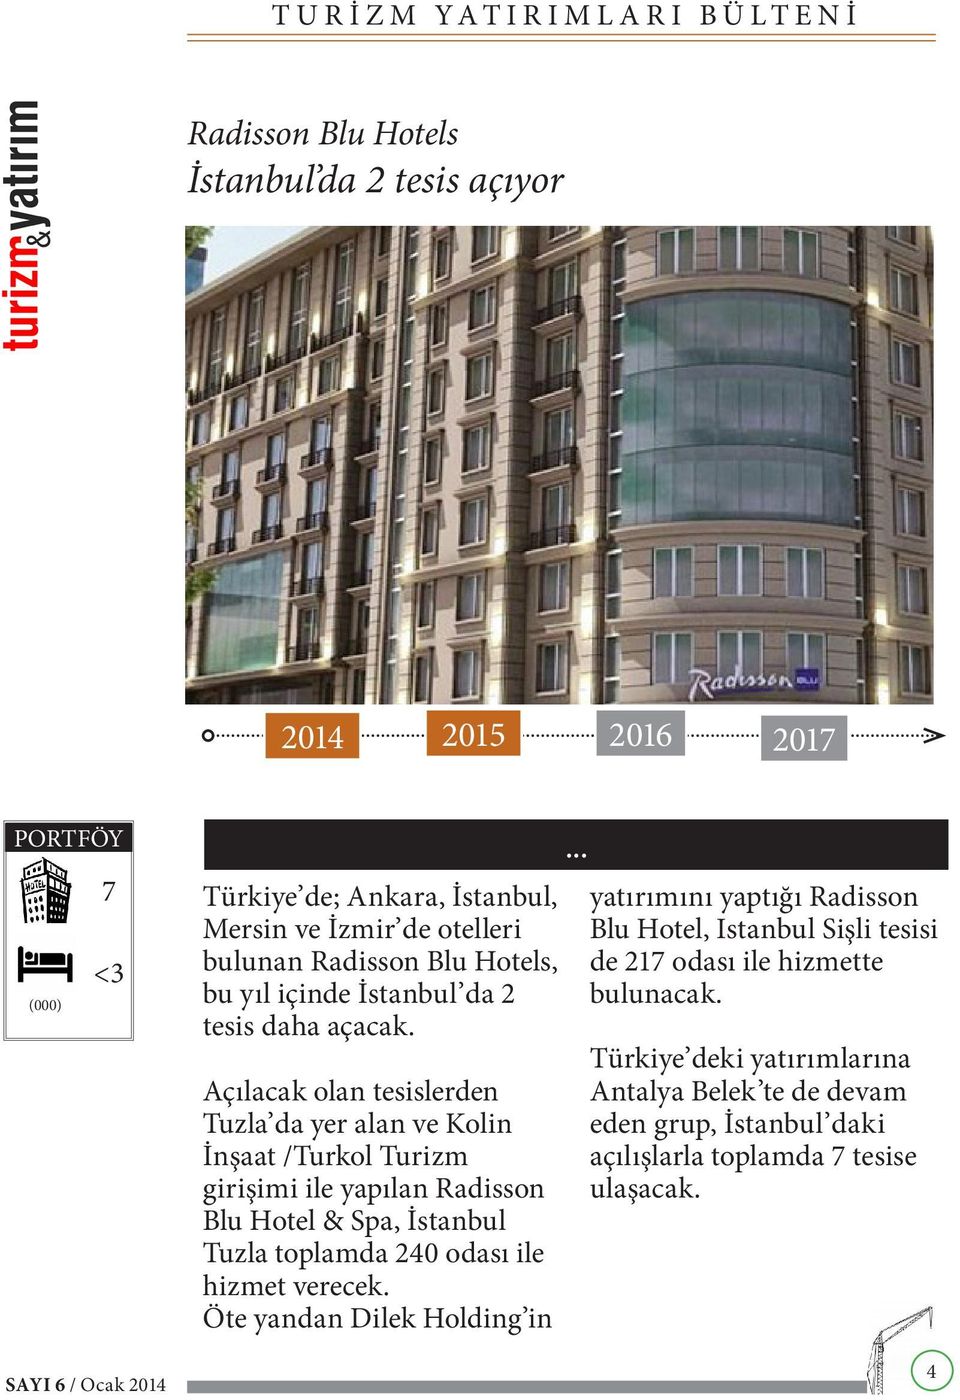 Açılacak olan tesislerden Tuzla da yer alan ve Kolin İnşaat /Turkol Turizm girişimi ile yapılan Radisson Blu Hotel & Spa, İstanbul Tuzla toplamda 240 odası